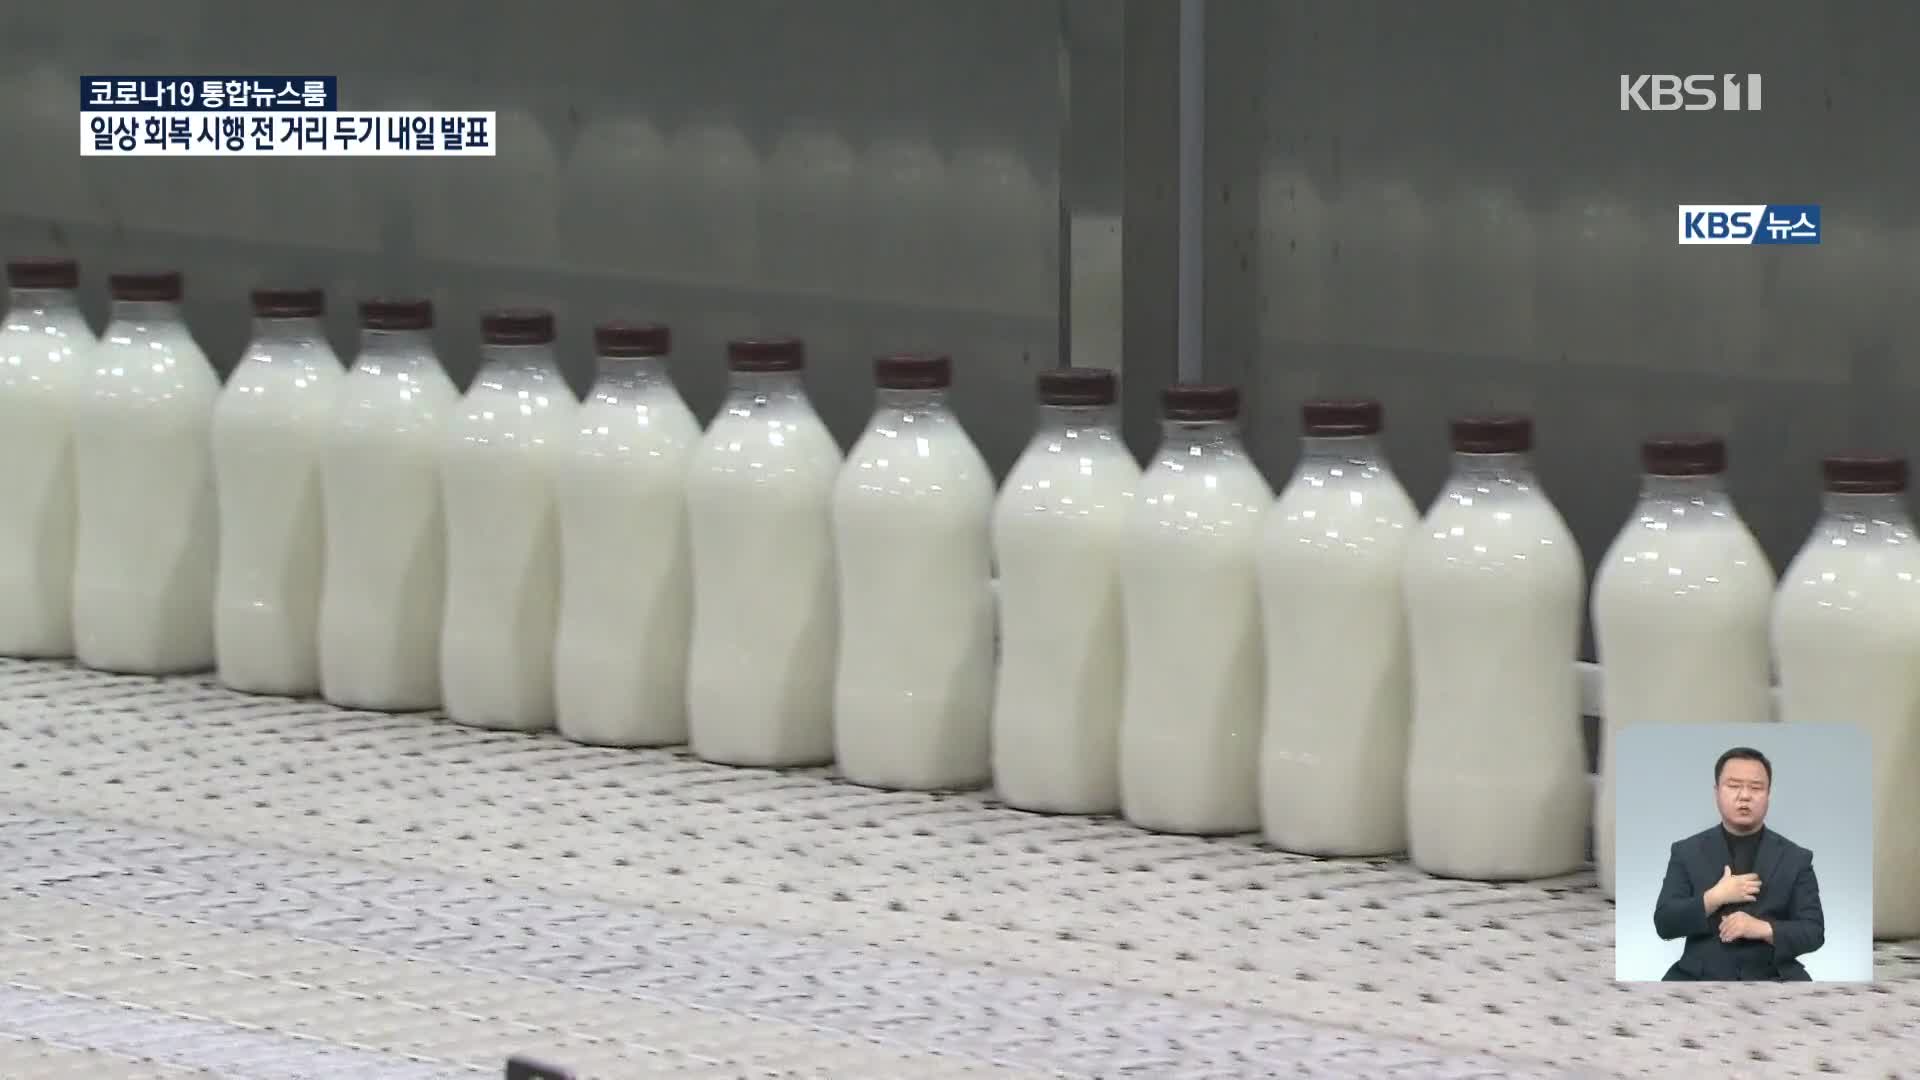 우유 남아도는데 오르는 원윳값…“낙농가 입김” VS “생산비 올라”